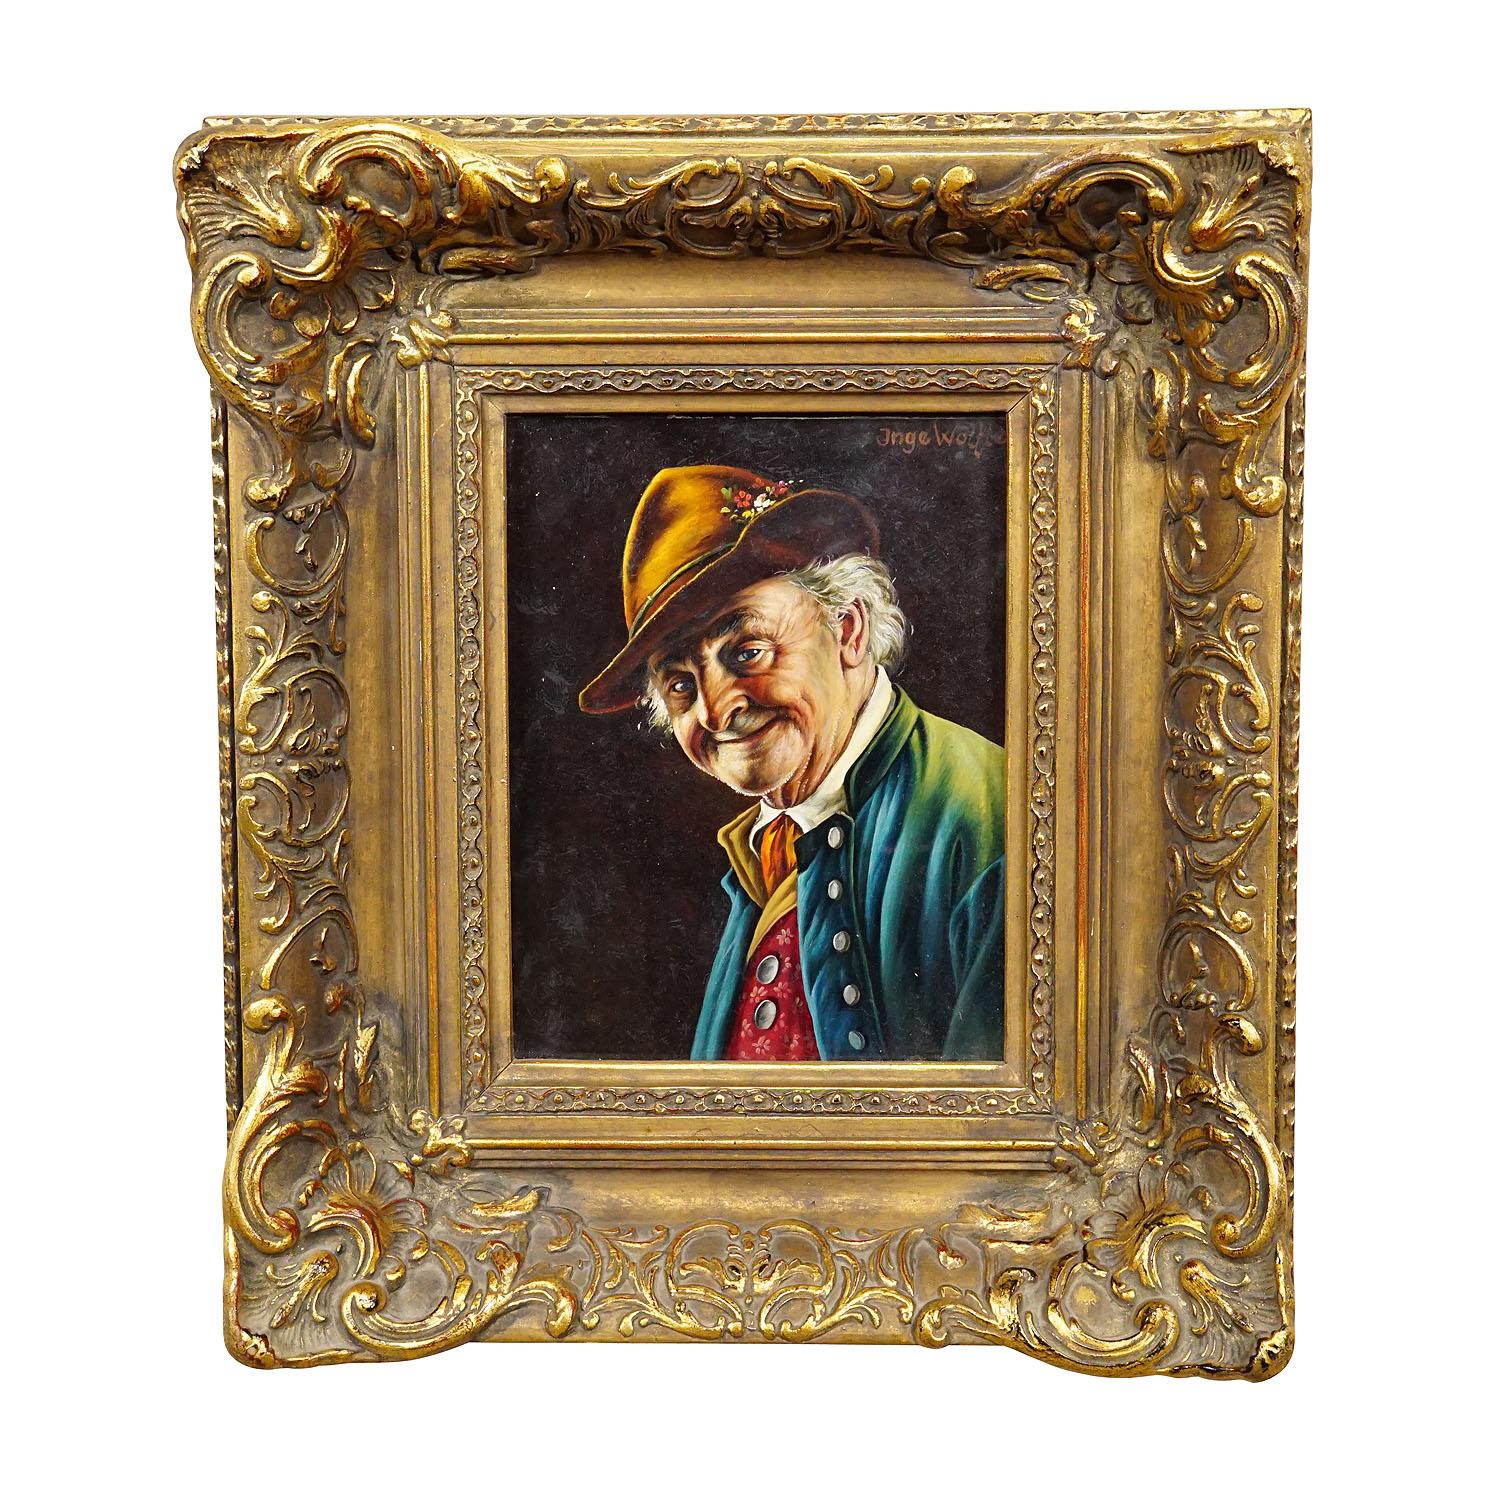 Inge Woelfle – Porträt eines bayerischen Volksmannes, Öl auf Holz

Ein farbenfrohes Ölgemälde, das einen volkstümlichen bayerischen Mann in seinem Sonntagsgewand darstellt. Gemalt auf Holz mit Pastellfarben um 1950. Gerahmt mit geschnitztem und